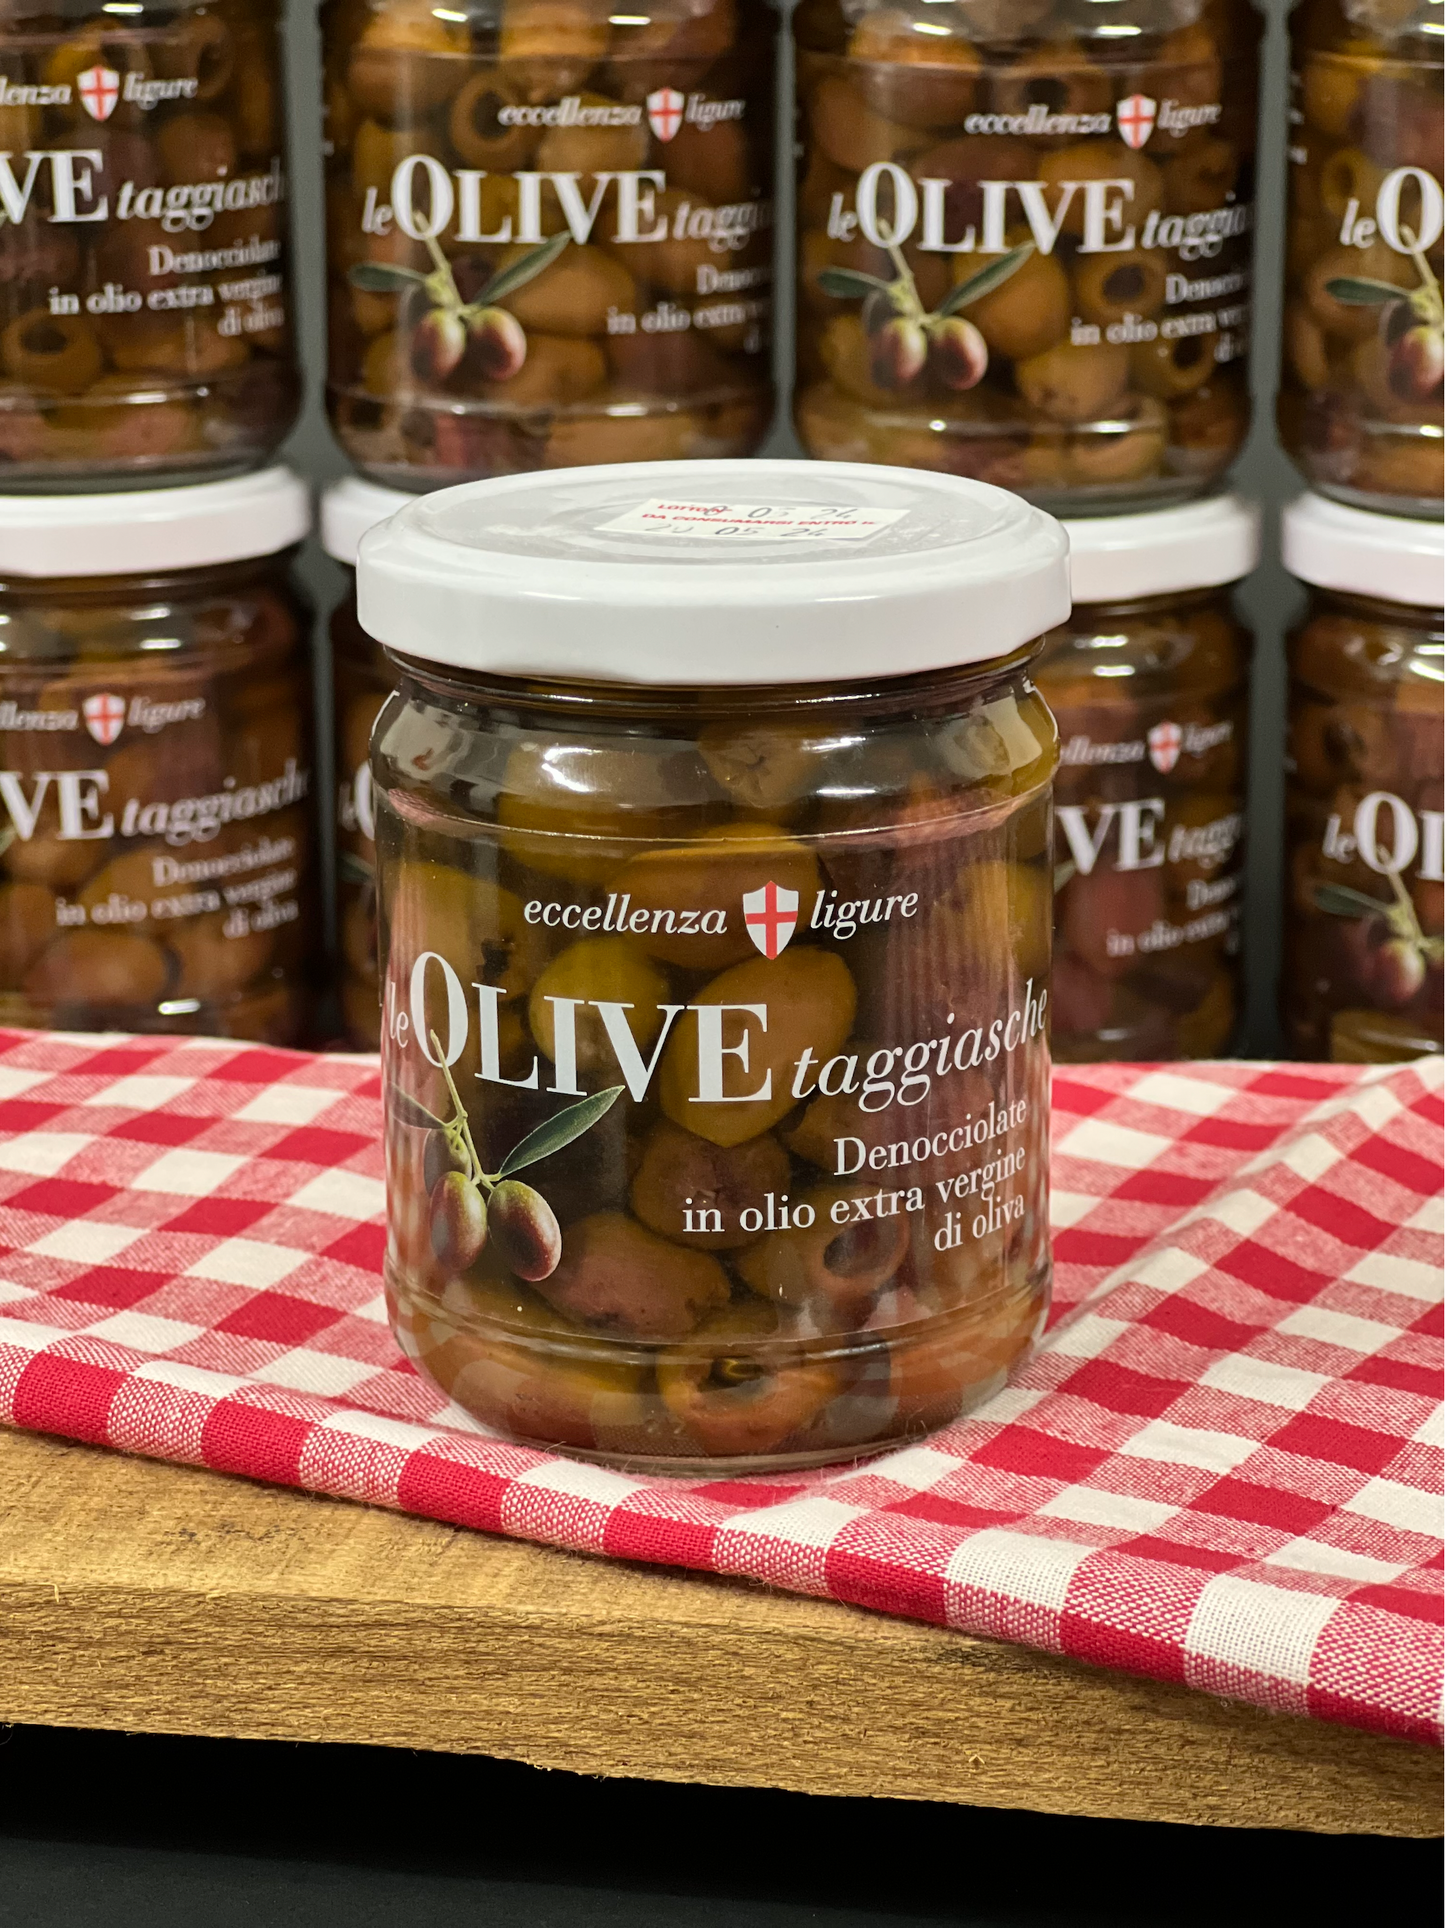 Olive Taggiasche Denocciolate in Olio Extra Vergine di oliva